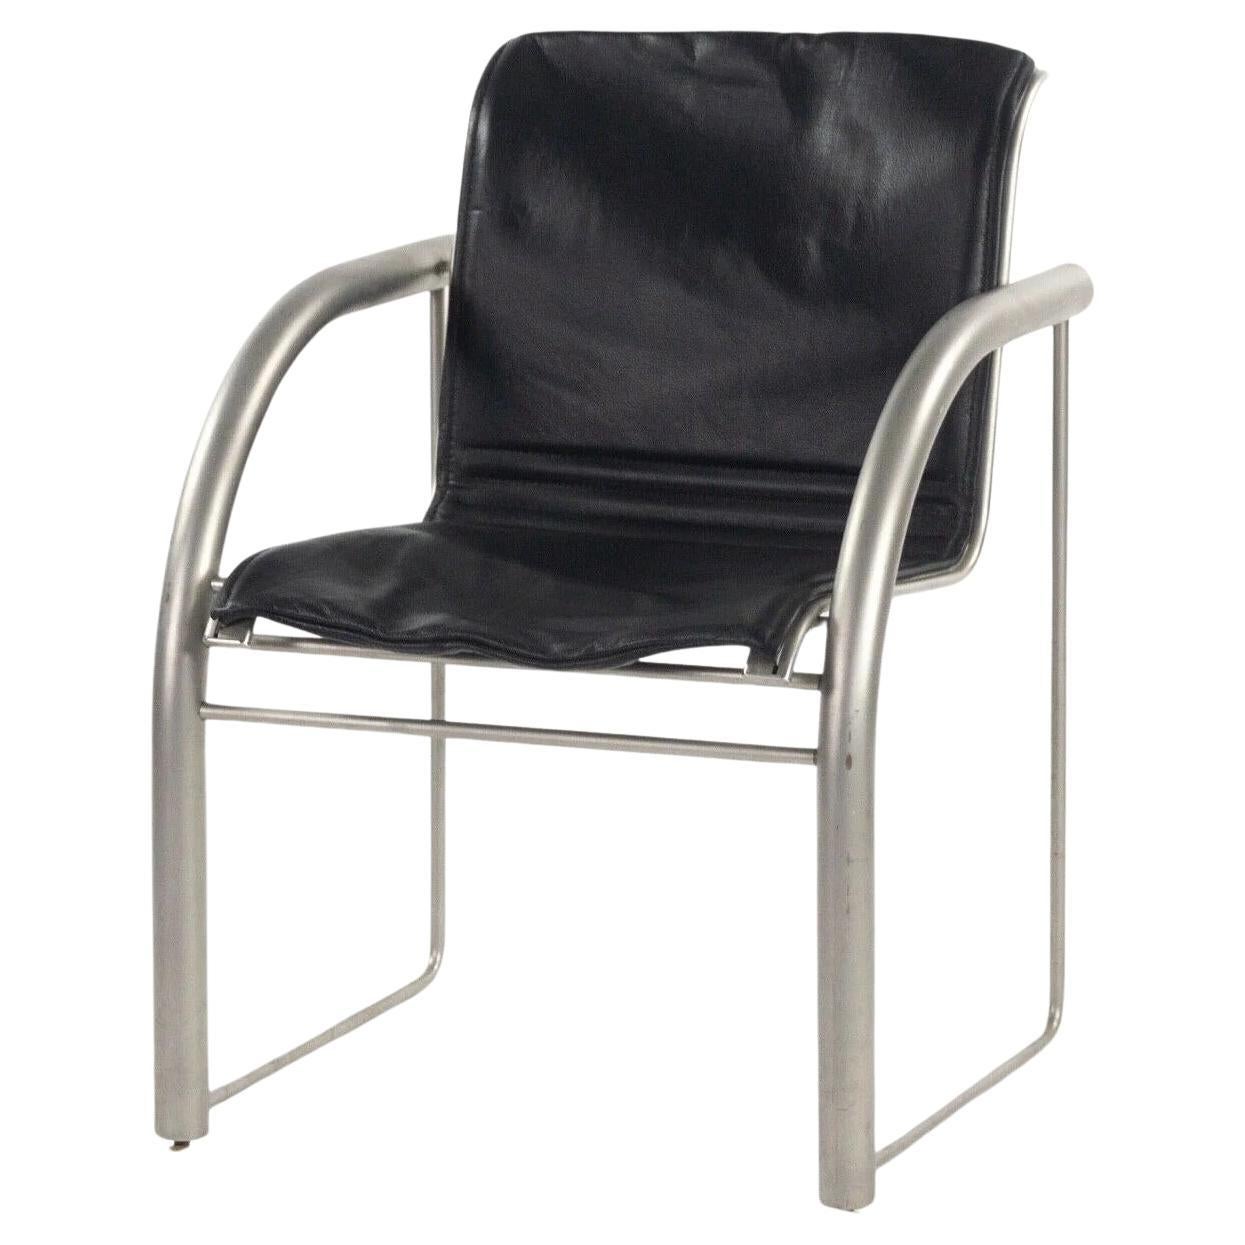 Prototype de la collection Richard Schultz 2002, chaise de salle à manger en acier inoxydable et cuir